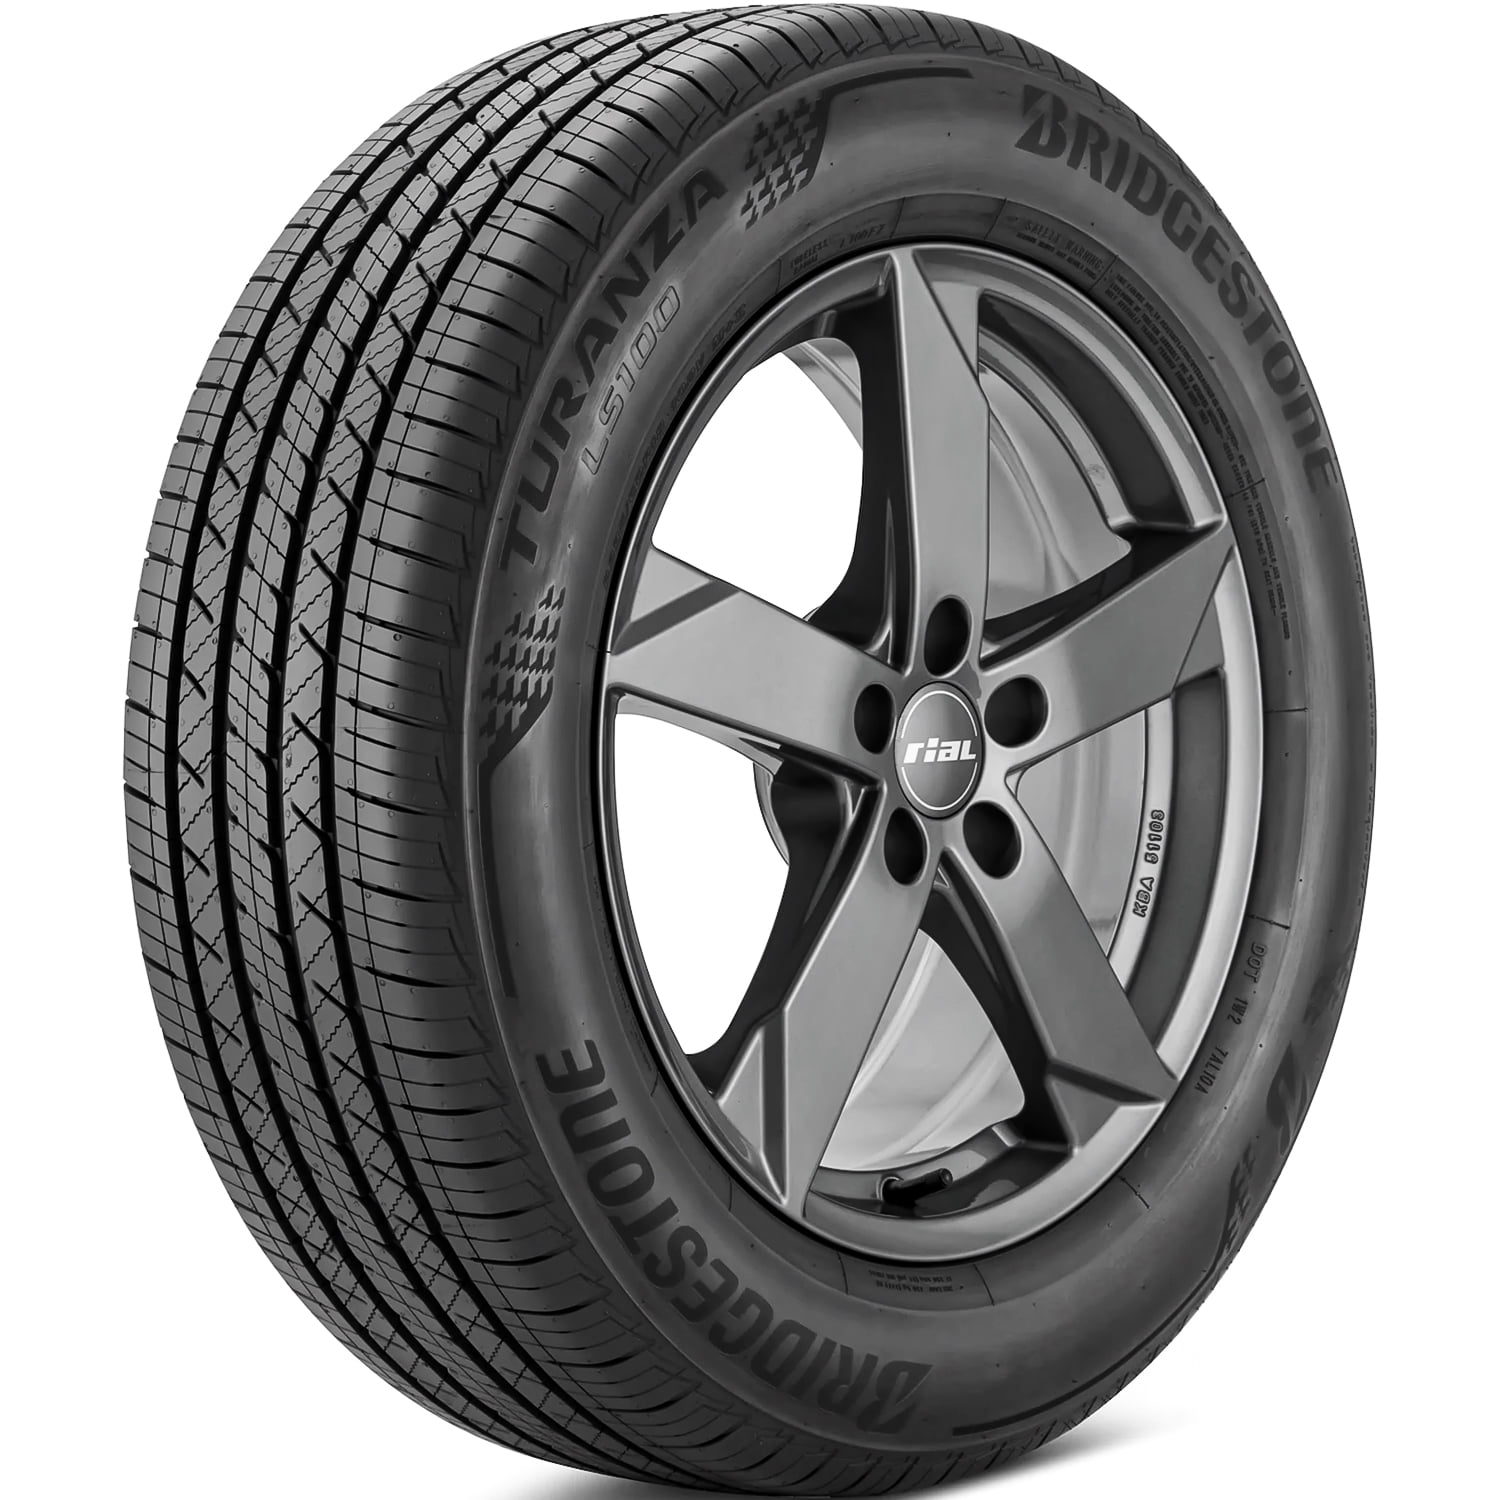 MOE LS100 Bridgestone Tire Turanza 245/40R18 97H XL